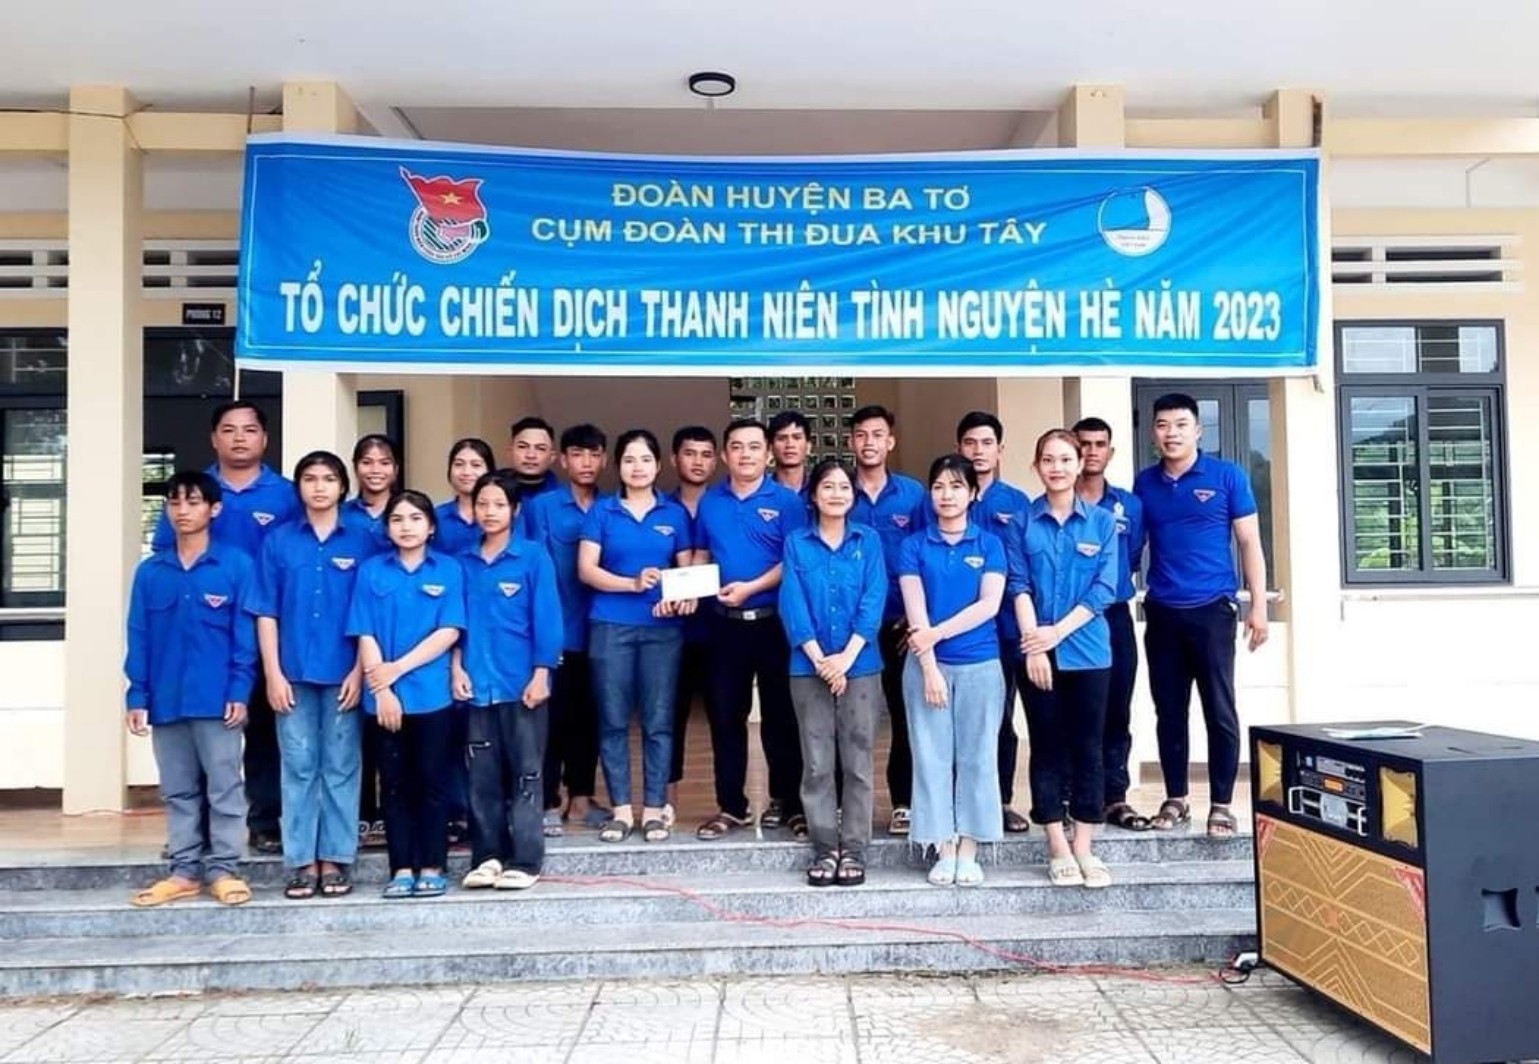 Đoàn thanh niên Cộng sản Hồ Chí Minh xã Ba Tiêu phối hợp với Cụm Đoàn Thi đua Khu Tây huyện Ba Tơ tổ chức ra quân chiến dịch thanh niên tình nguyện hè năm 2023